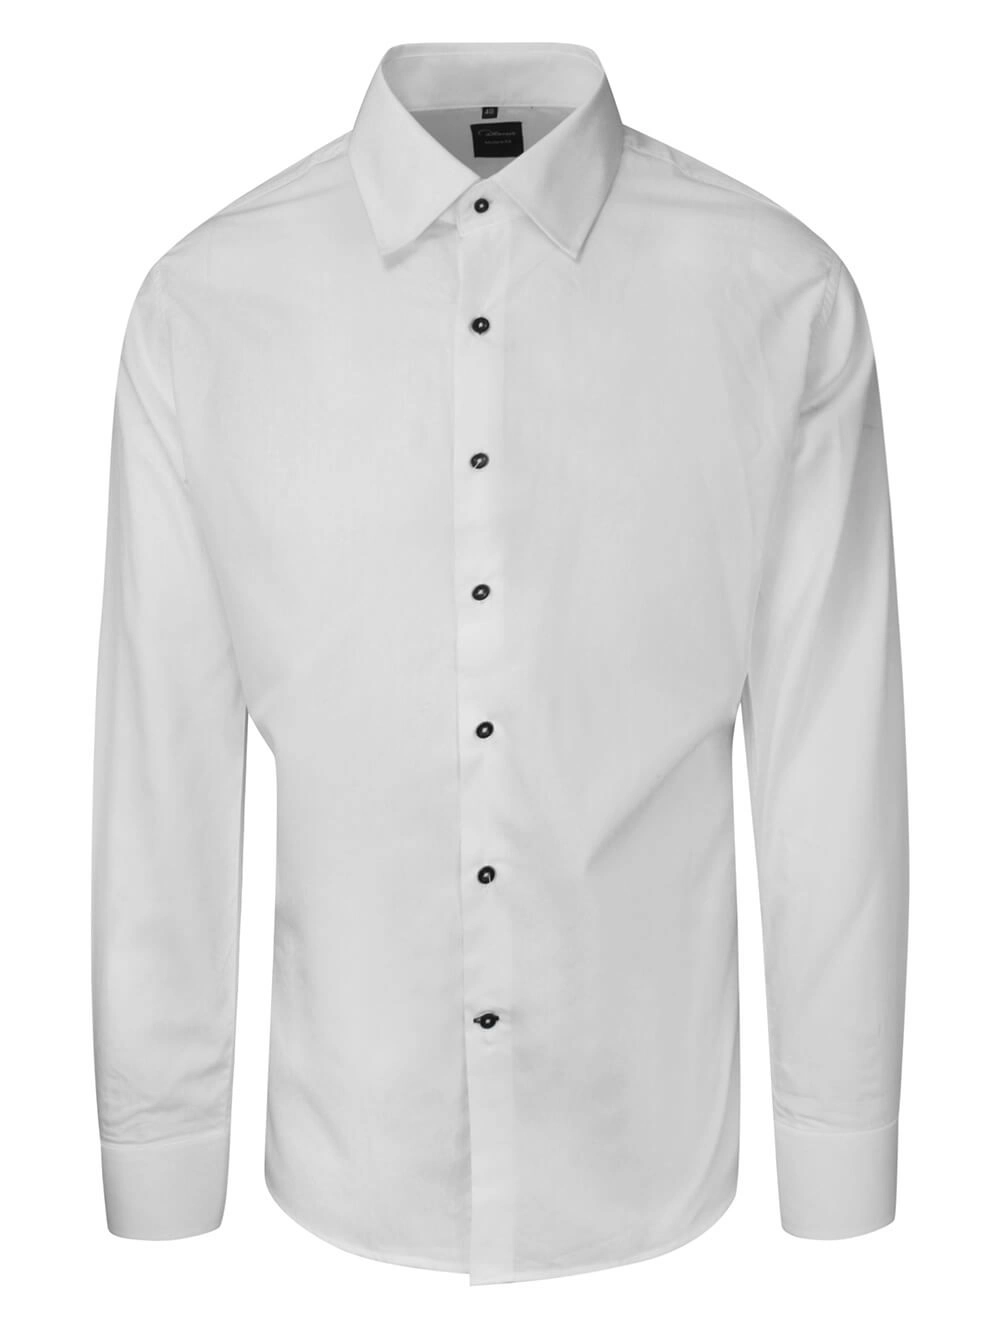 Koszula Biała Wizytowa Męska, Ciemne Guziki, z Długim Rękawem, Taliowana, 100% Bawełna -RANIR